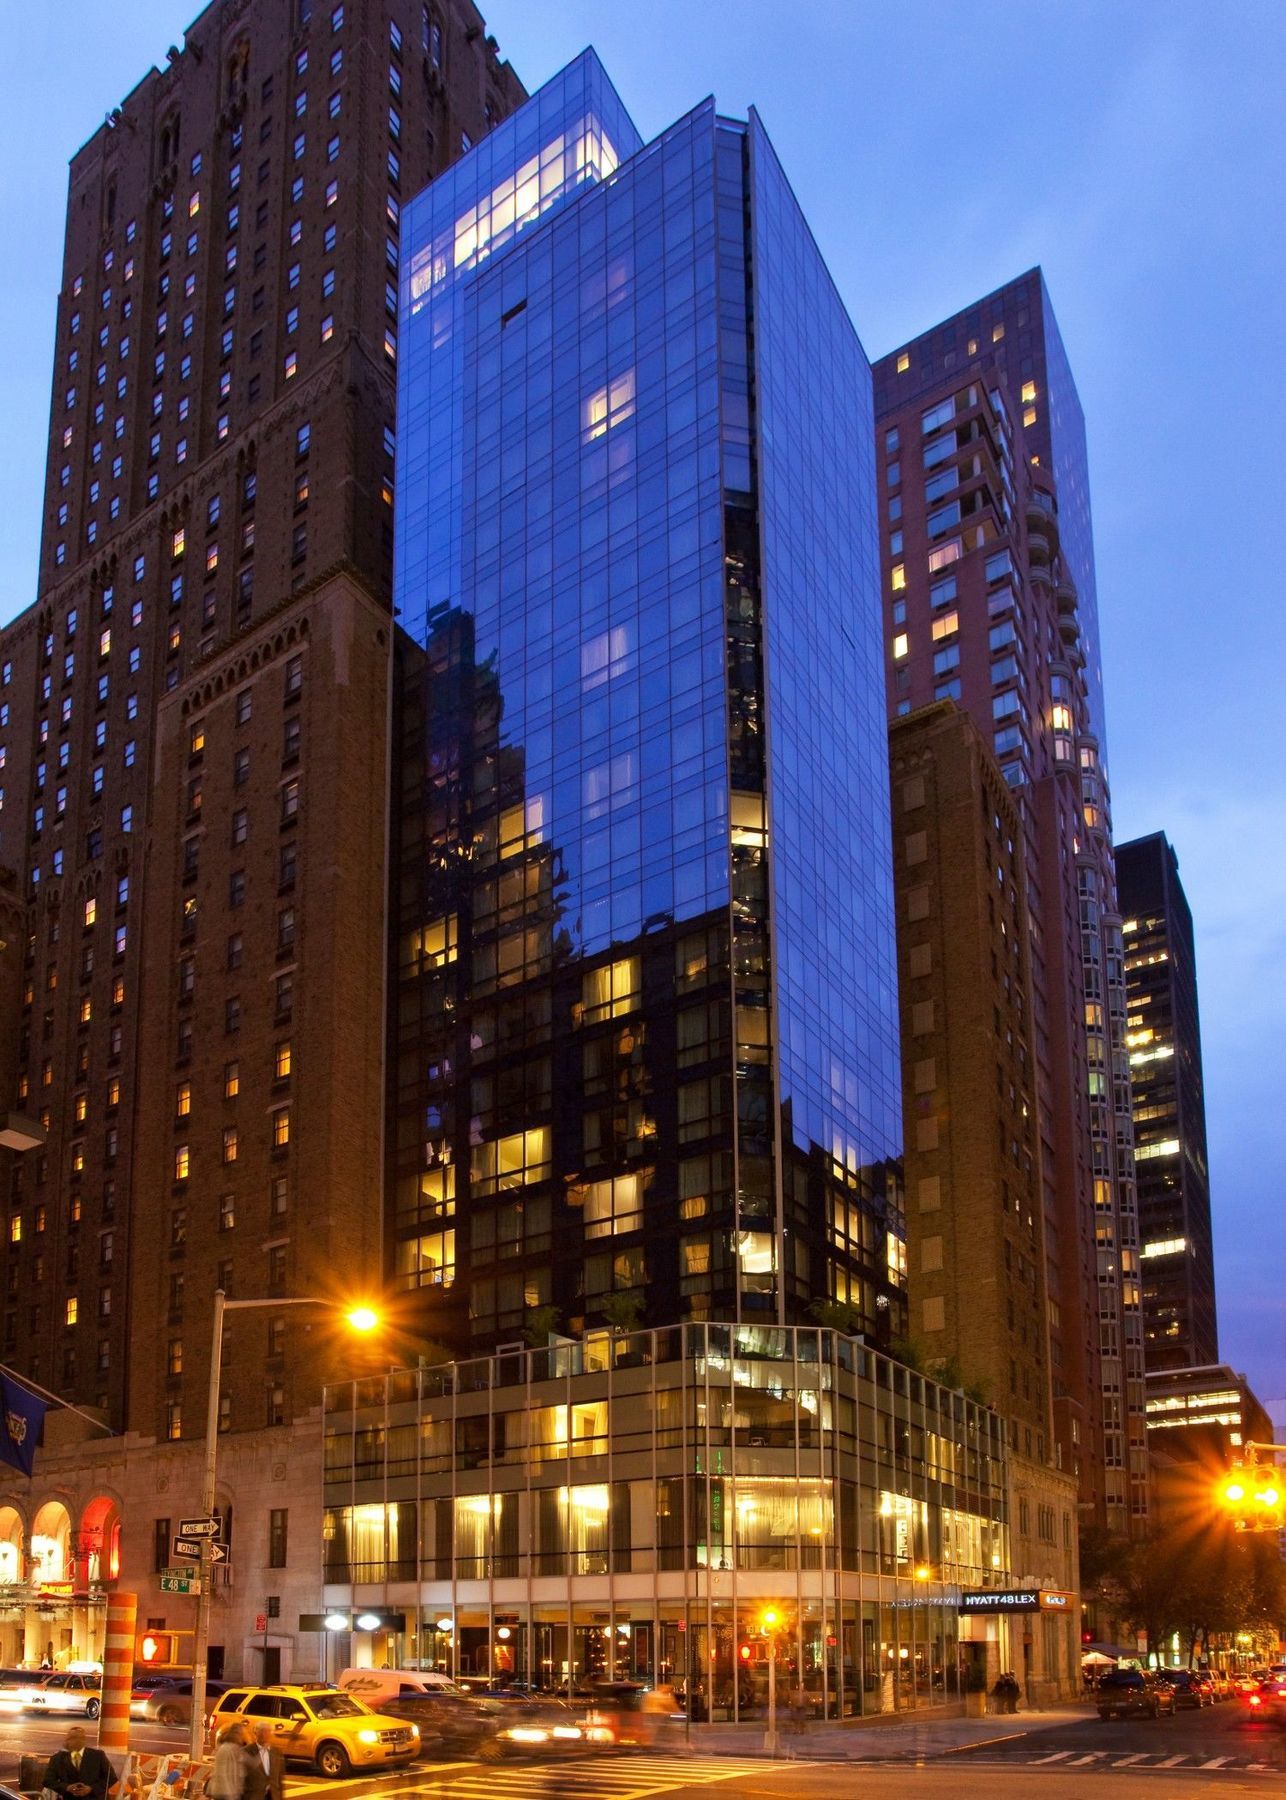 Hotel 48Lex Nueva York Exterior foto